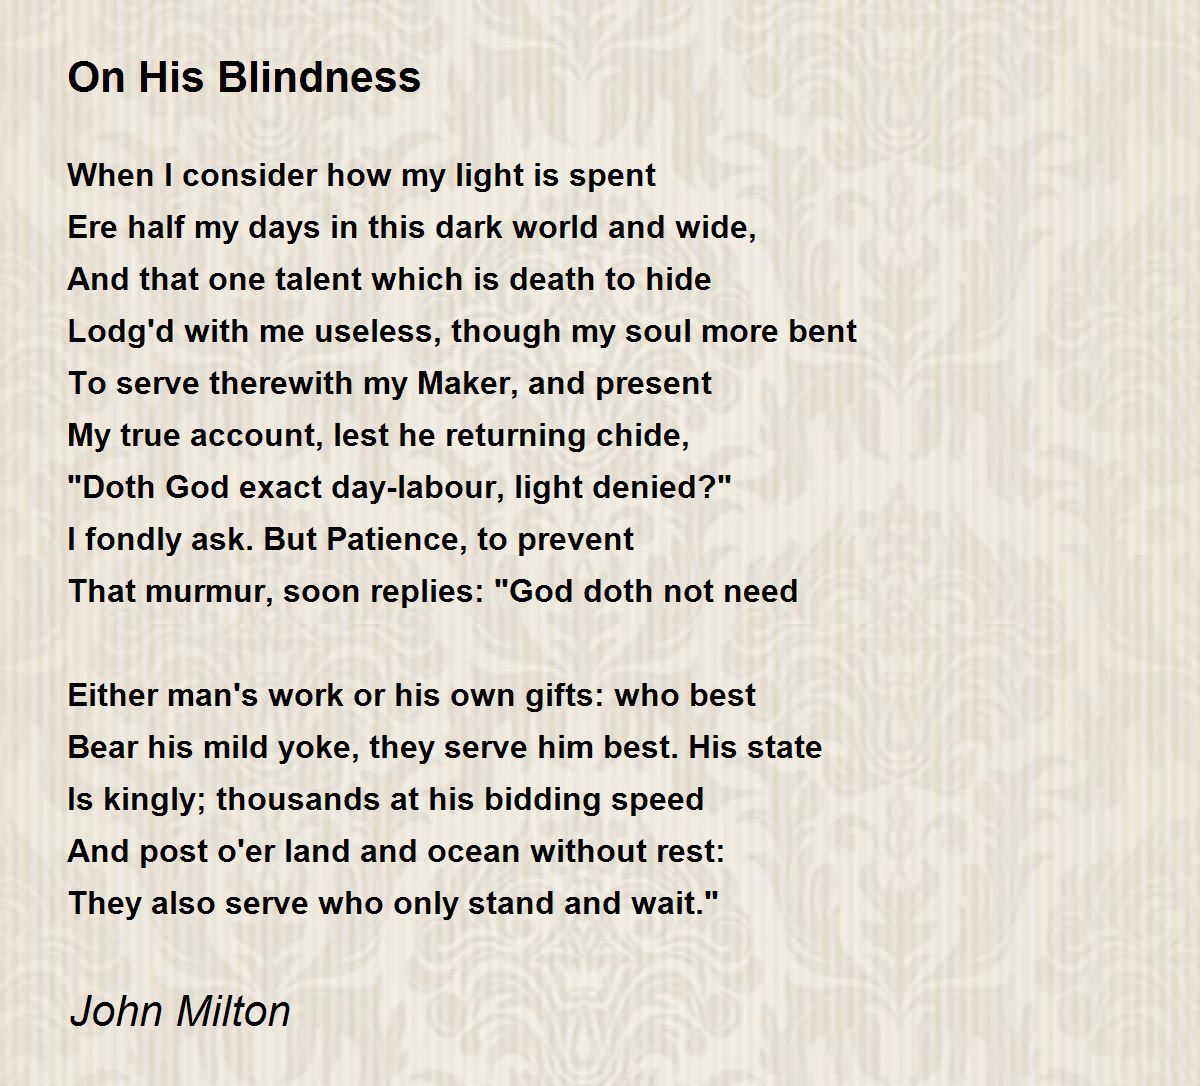 milton on his blindness analysis